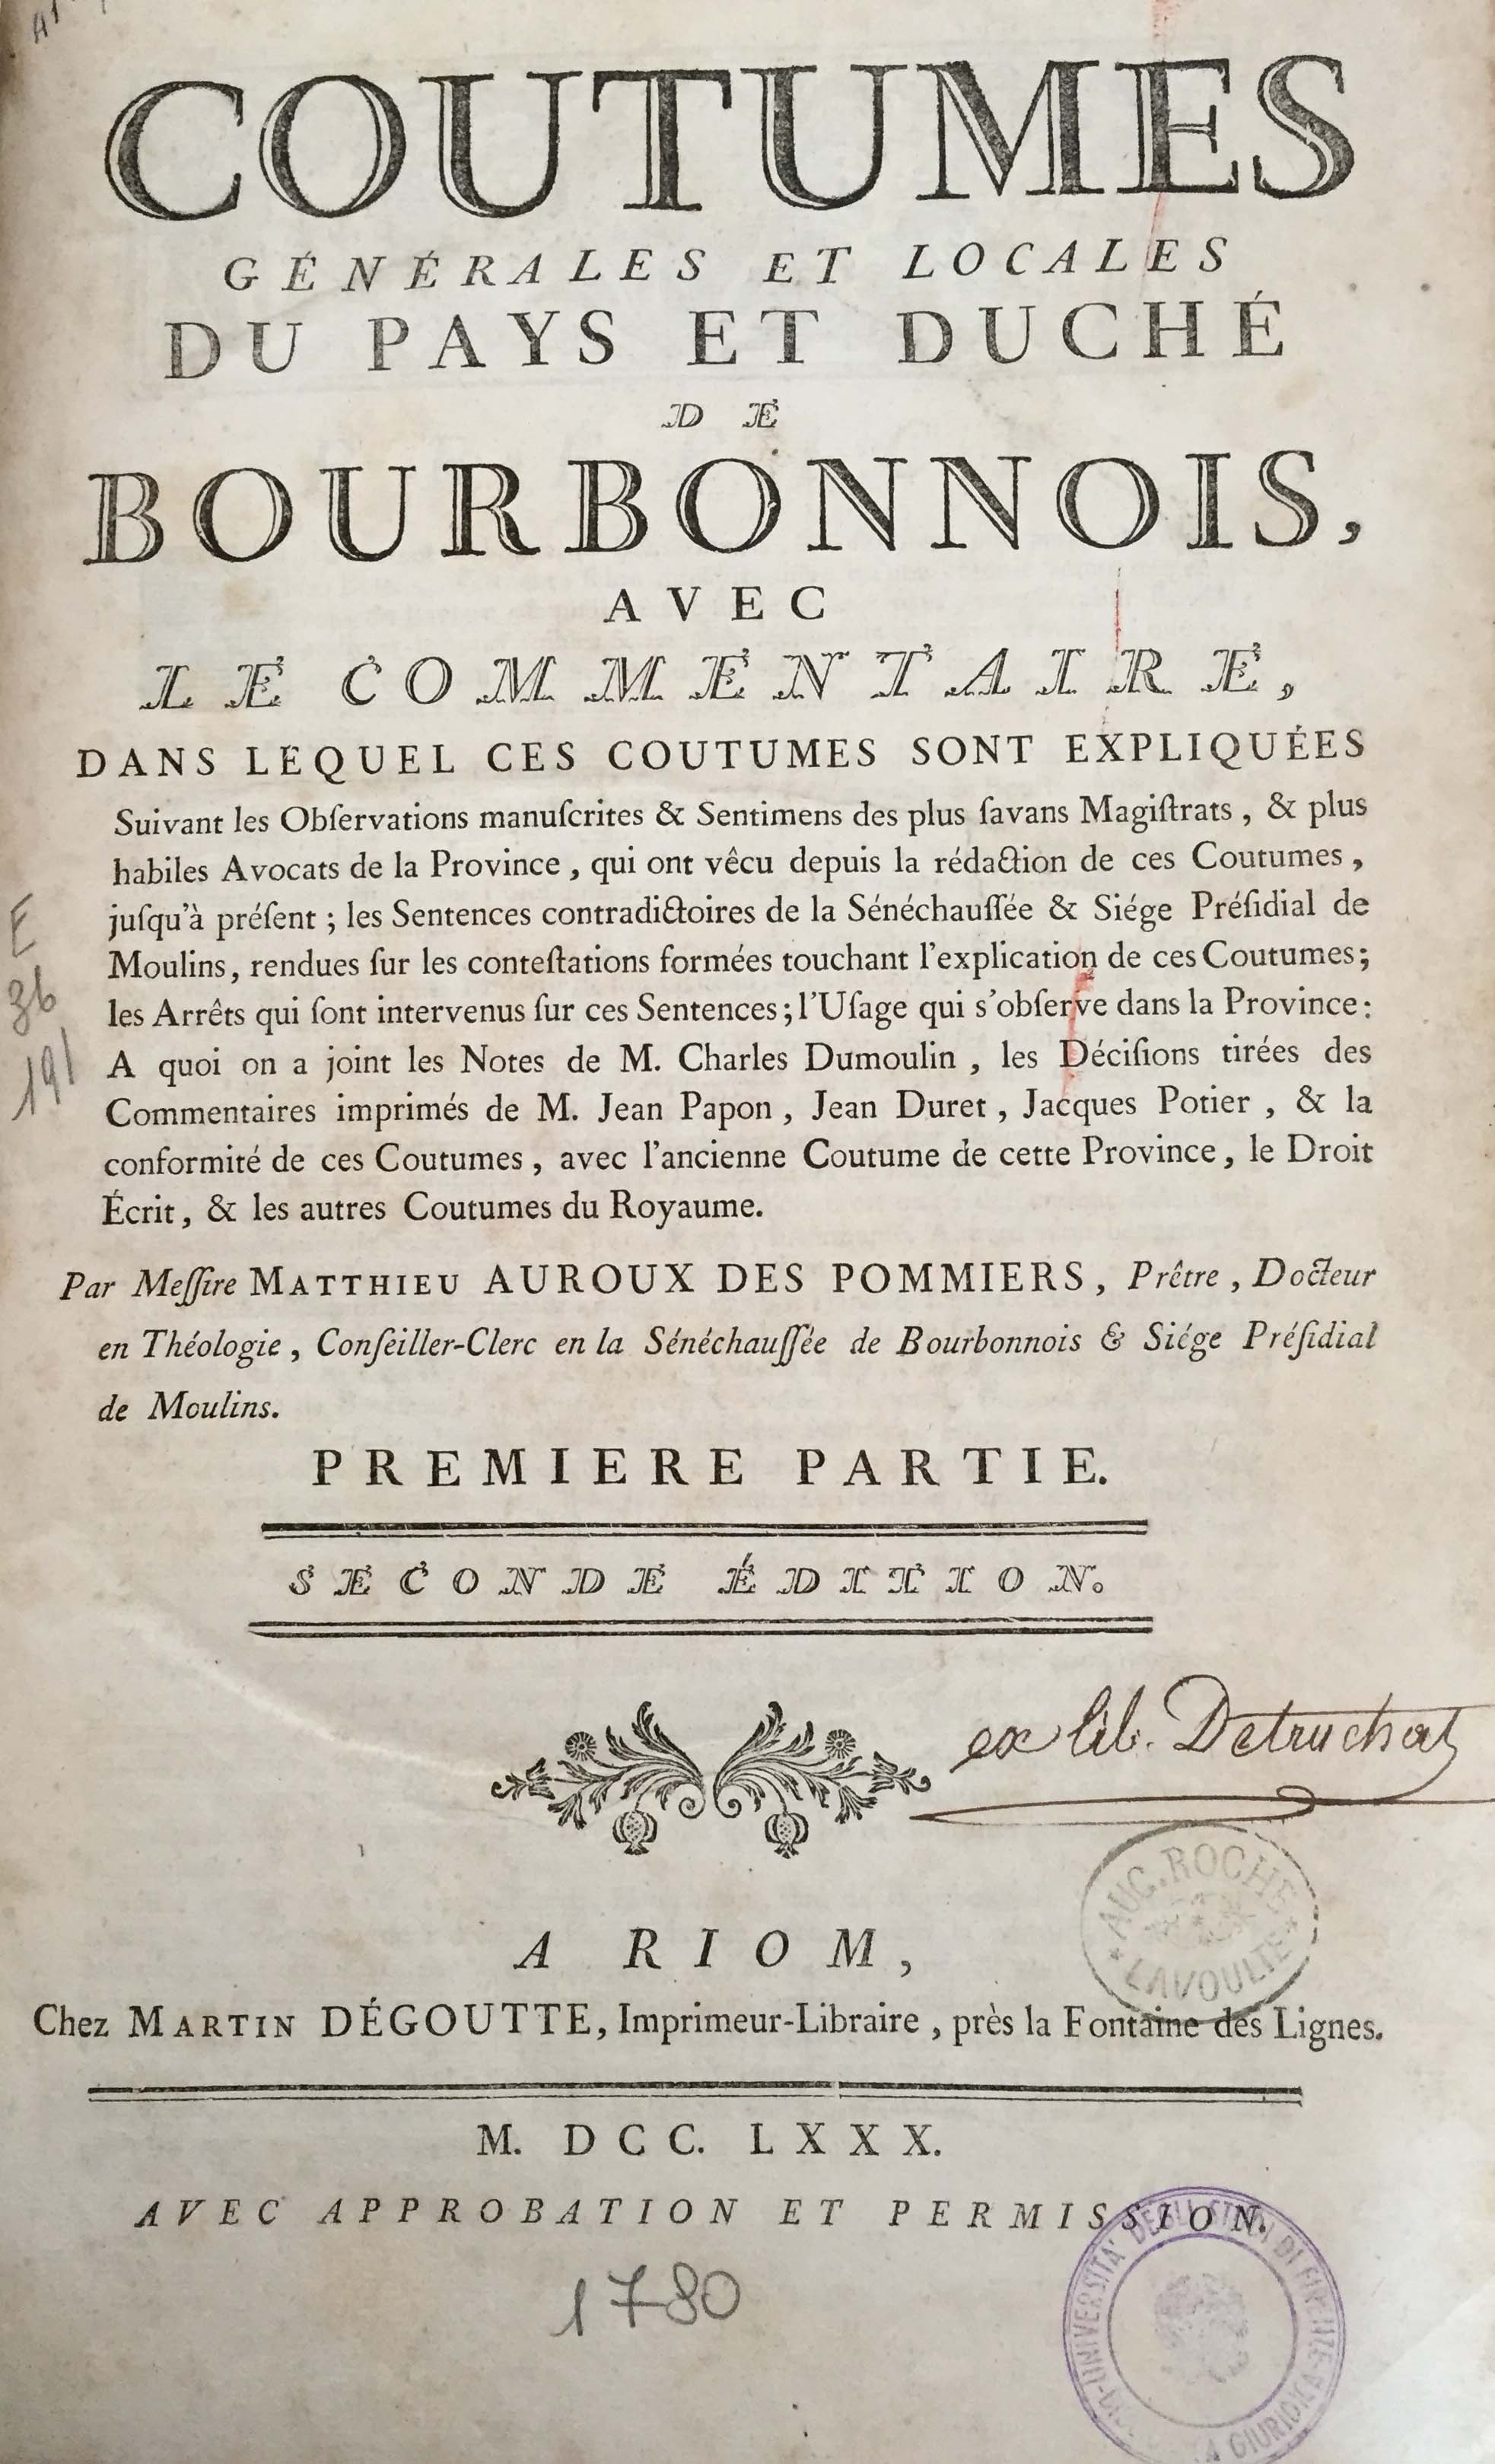 Coutumes générales et locales du pays et duché de Bourbonnois 